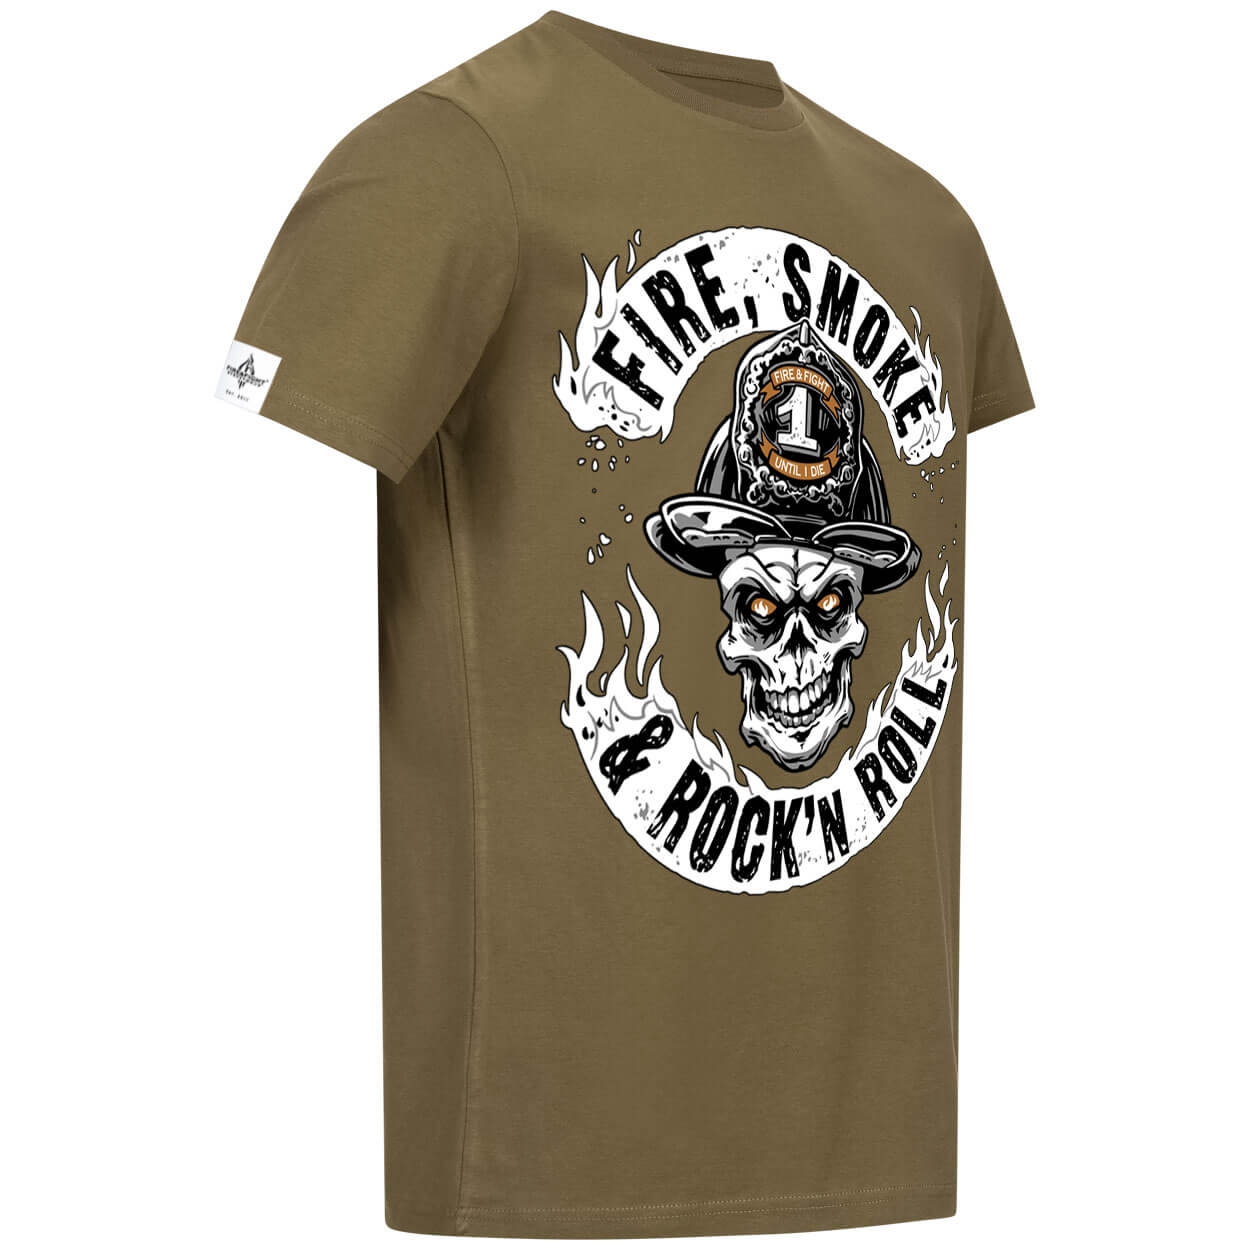 Fire Smoke & Rock´n Roll Original Design - Männer T-Shirt